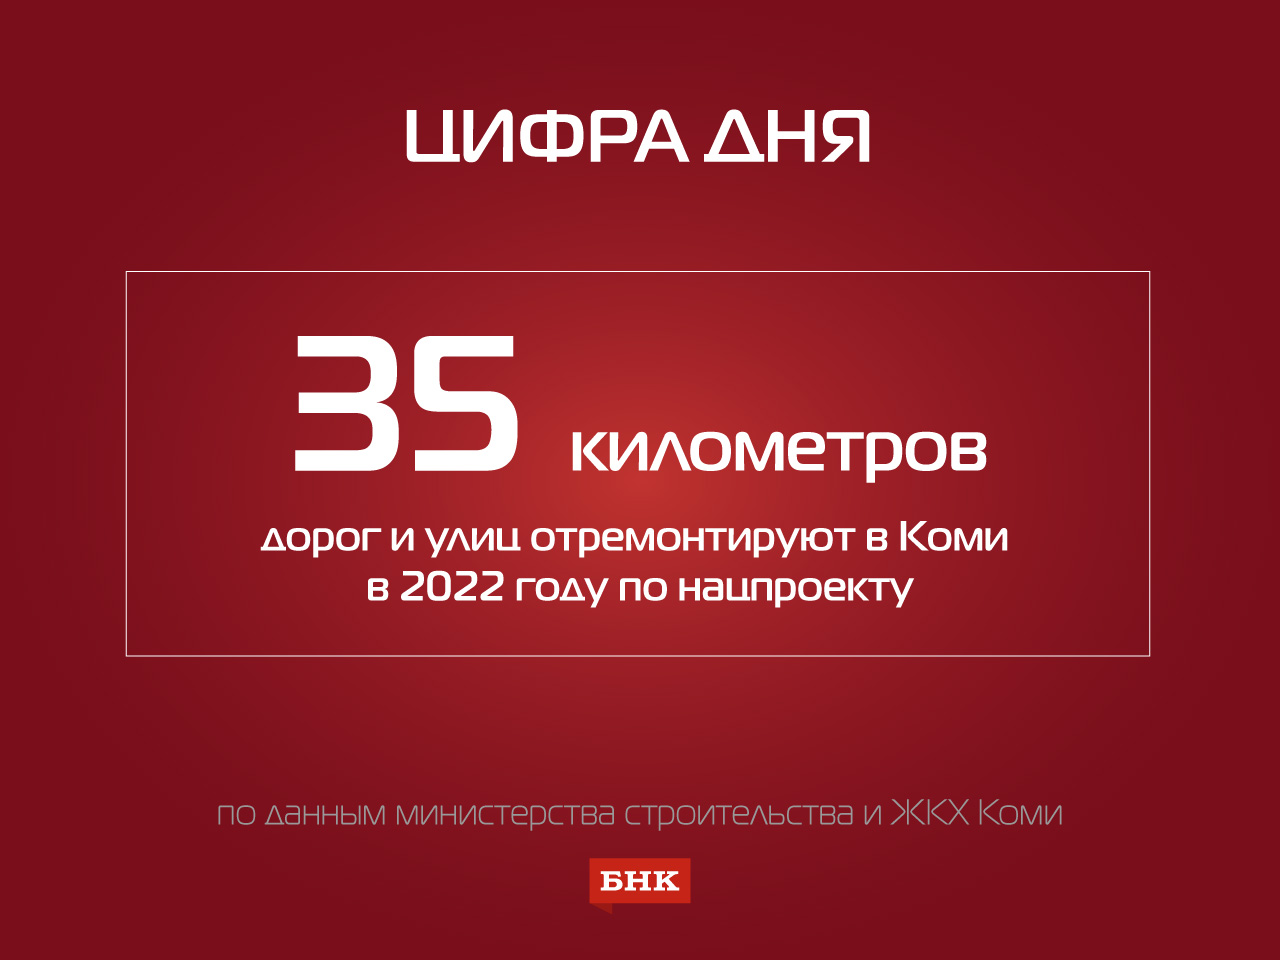 Цифра дня: в Коми в 2022 году по нацпроекту планируют отремонтировать 35 километров дорог и улиц